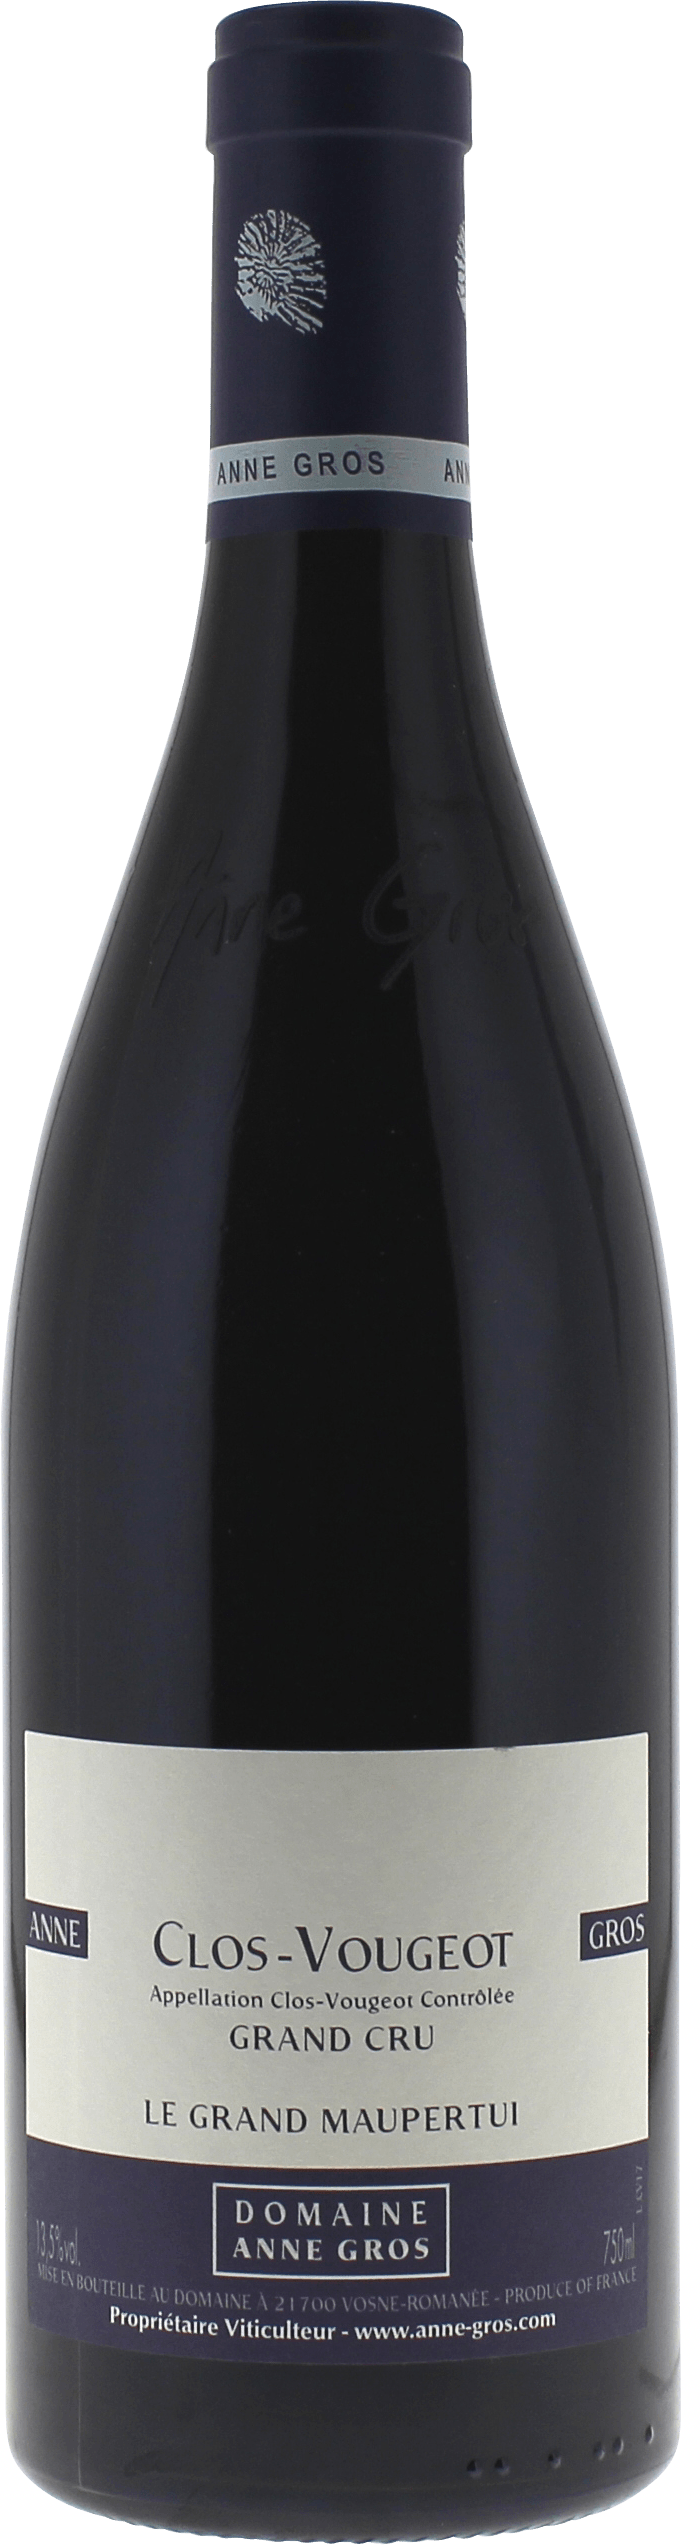 Clos de vougeot le grand maupertui 2020  GROS Anne, Bourgogne rouge